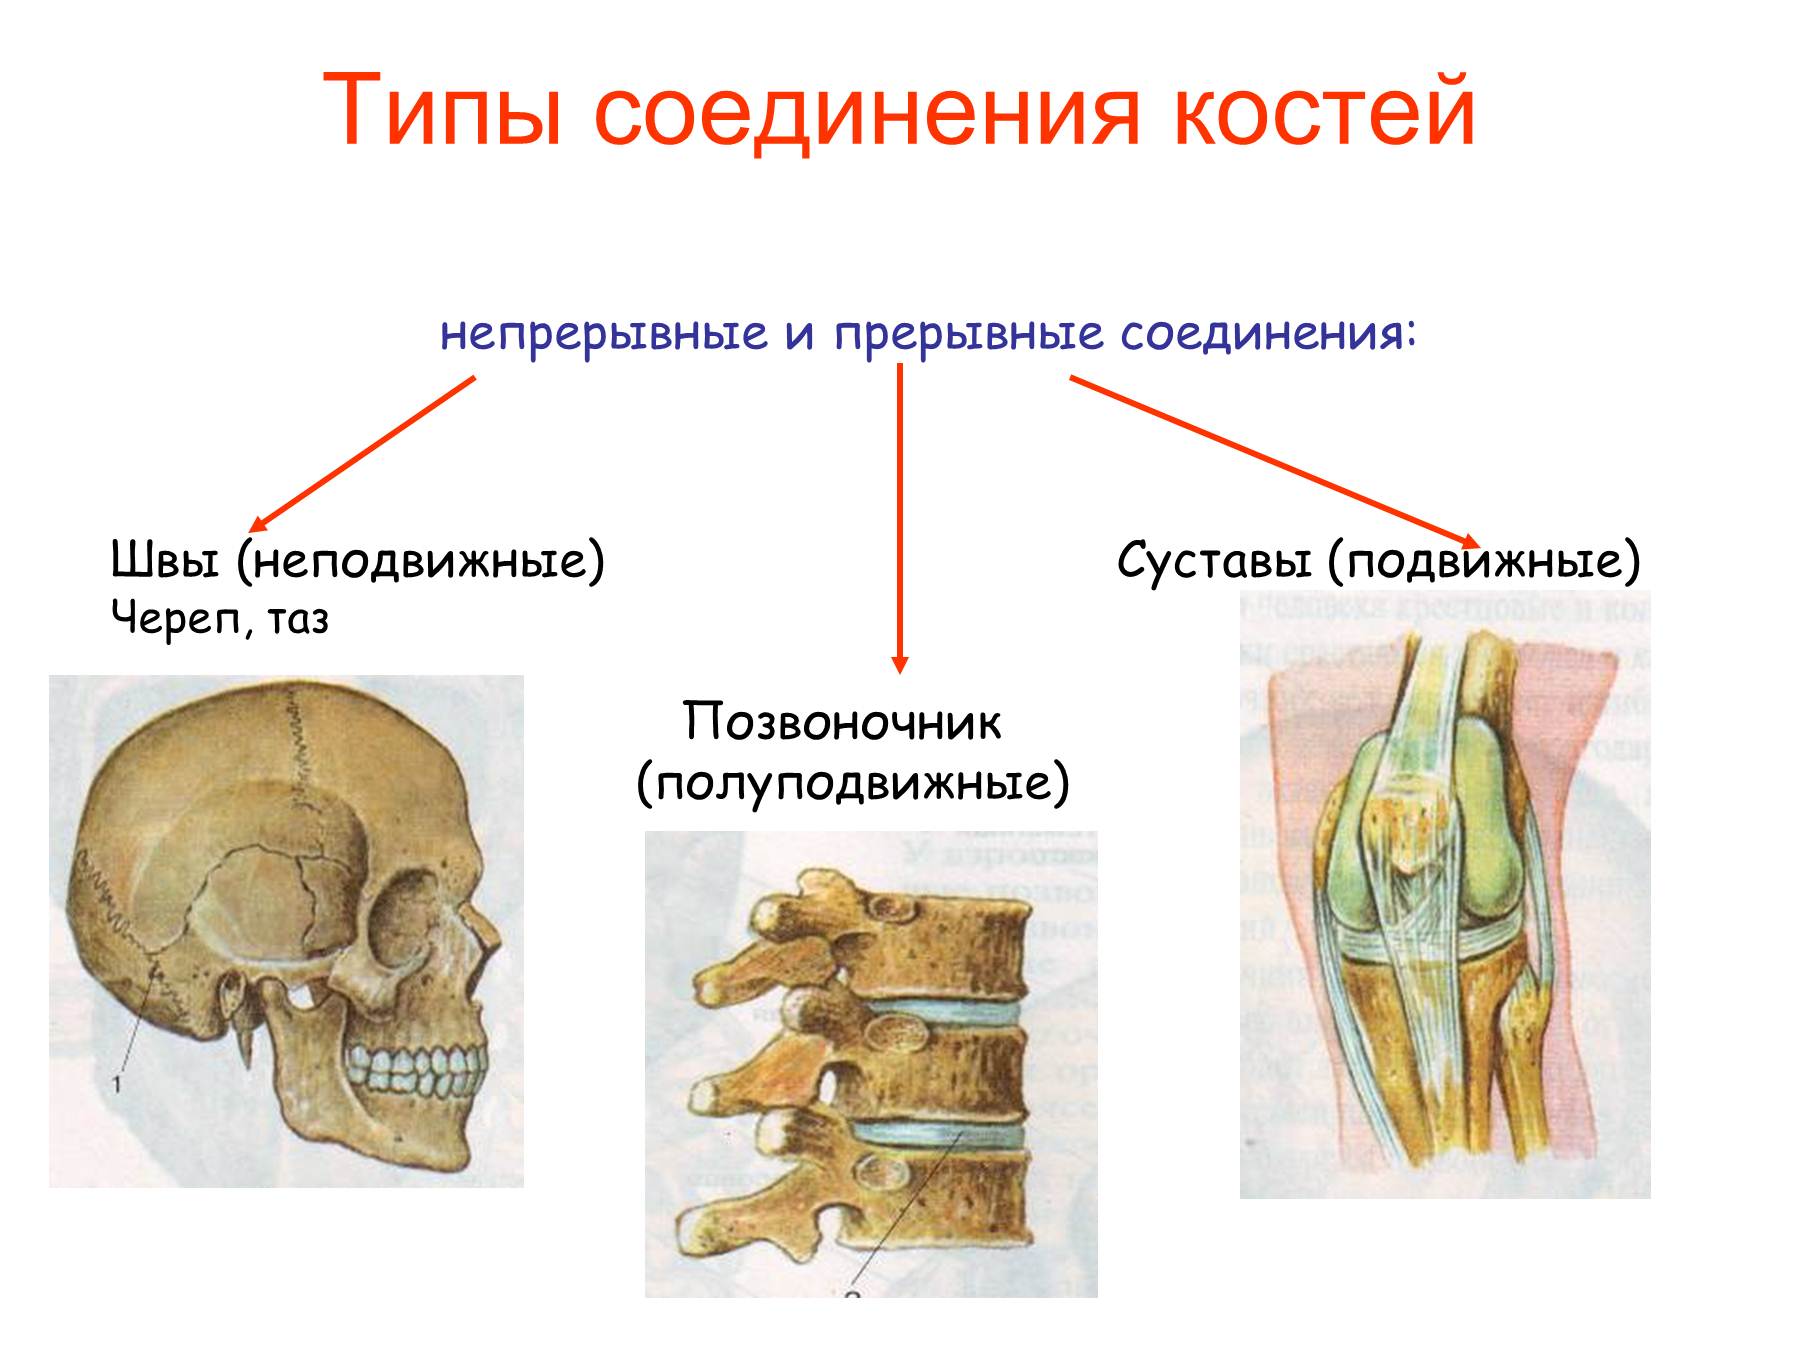 Суставное соединение костей. Соединение костей человека непрерывные прерывные. Подвижное полуподвижное и неподвижное соединение костей. Соединения костей непрерывные прерывные симфизы. Неподвижные полуподвижные и подвижные соединения костей.